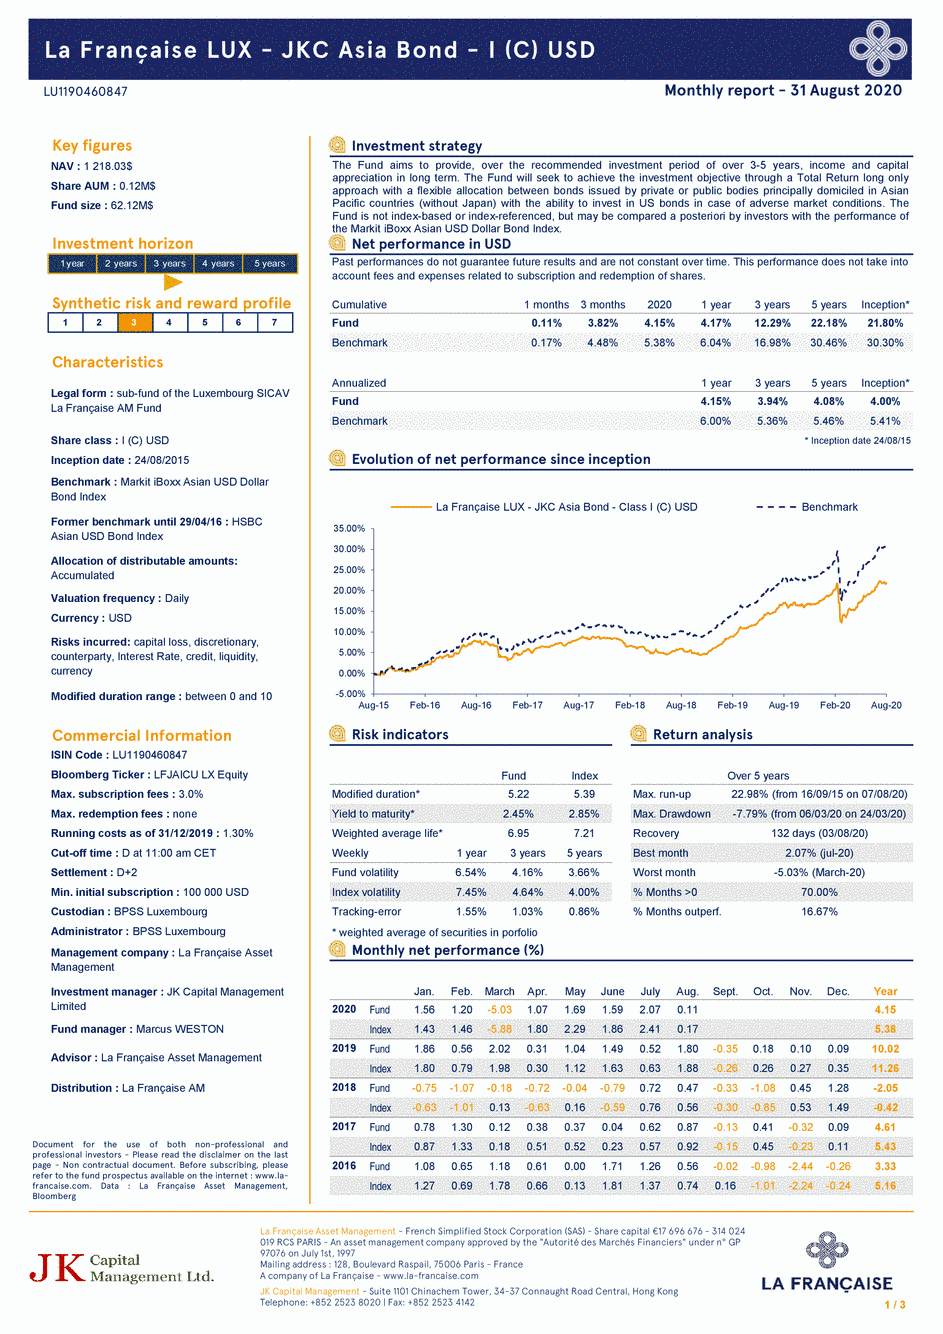 Reporting La Française LUX - JKC Asia Bond - Class I (C) USD - 31/12/2018 - Anglais